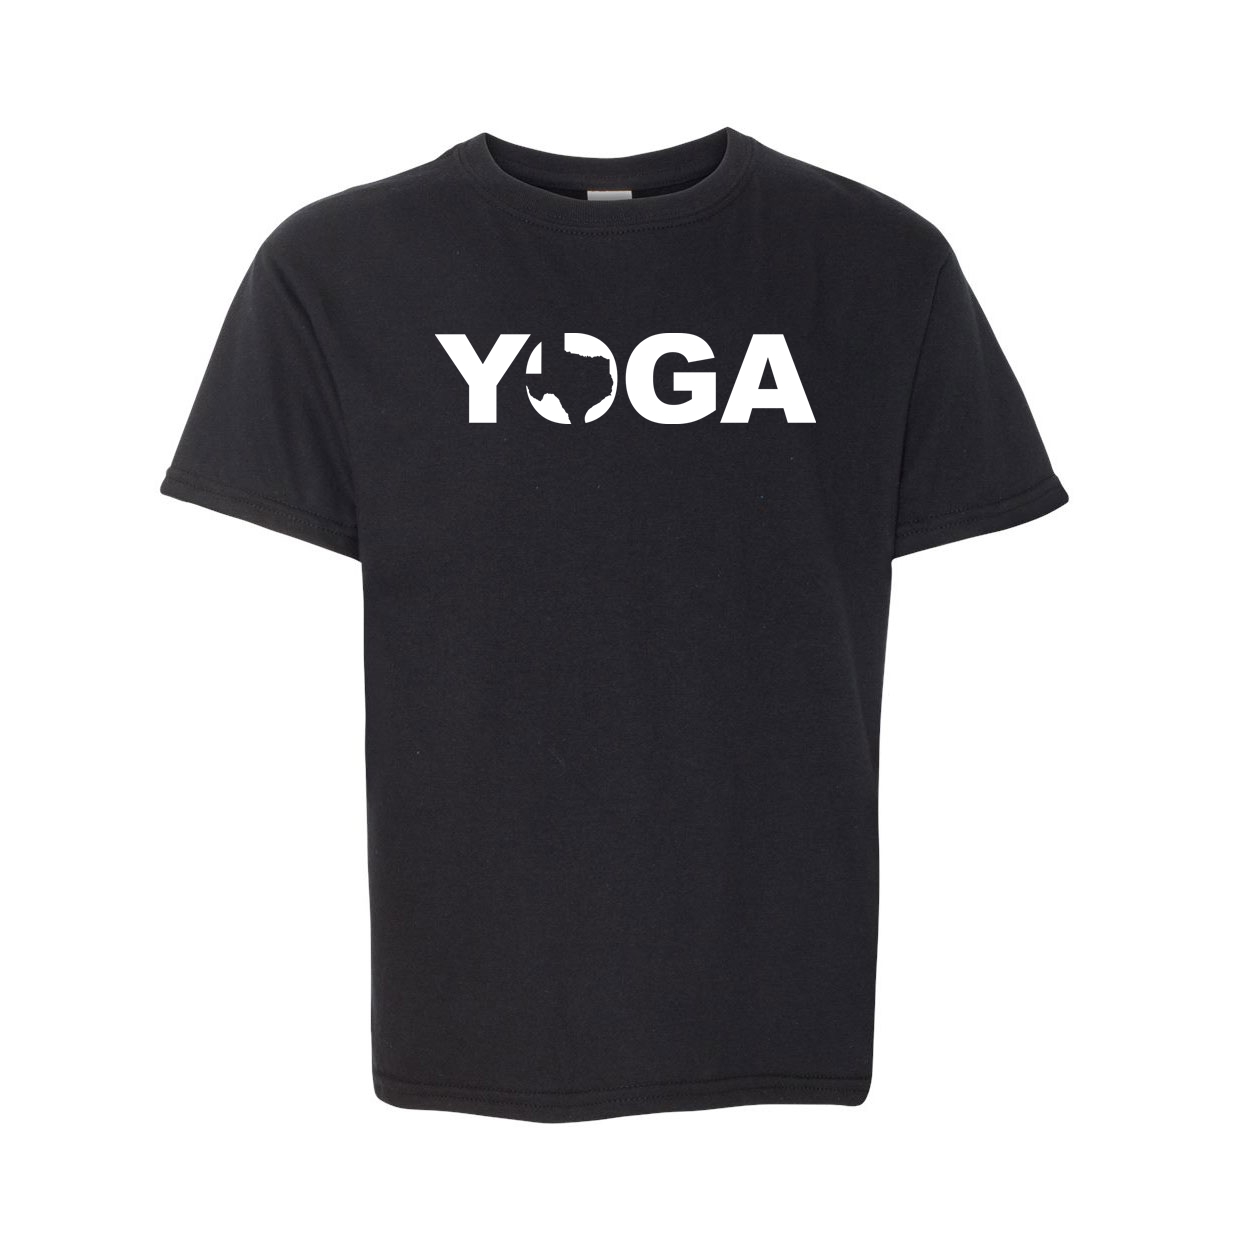 Yoga Texas Classic Youth T-Shirt Black (White Logo)